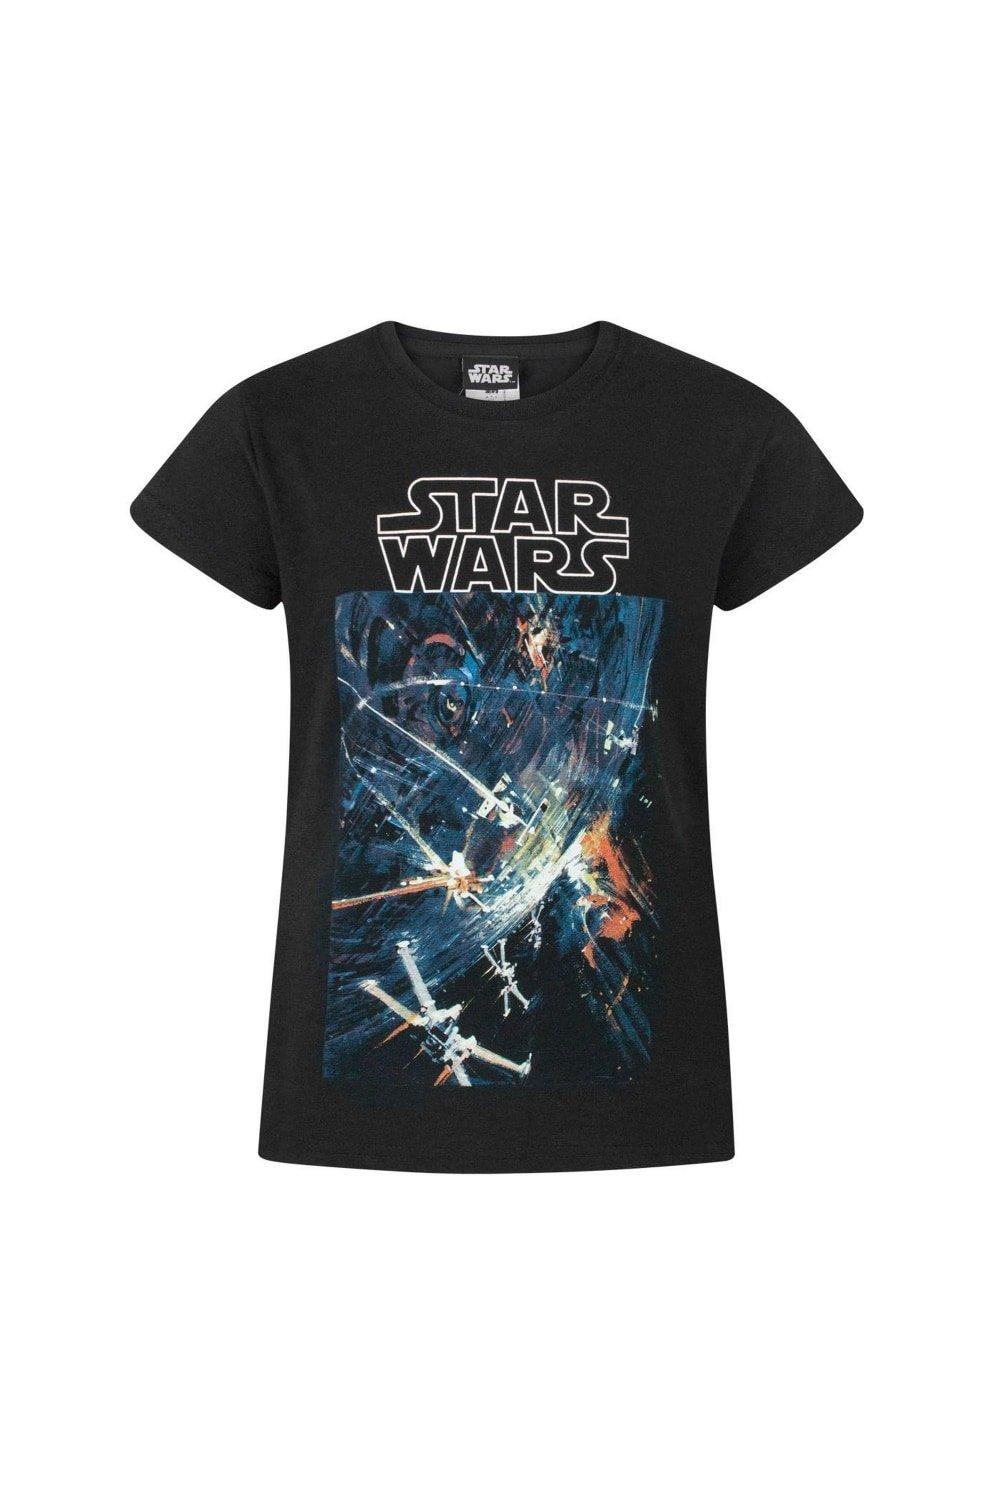 Official Death Star T-Shirt